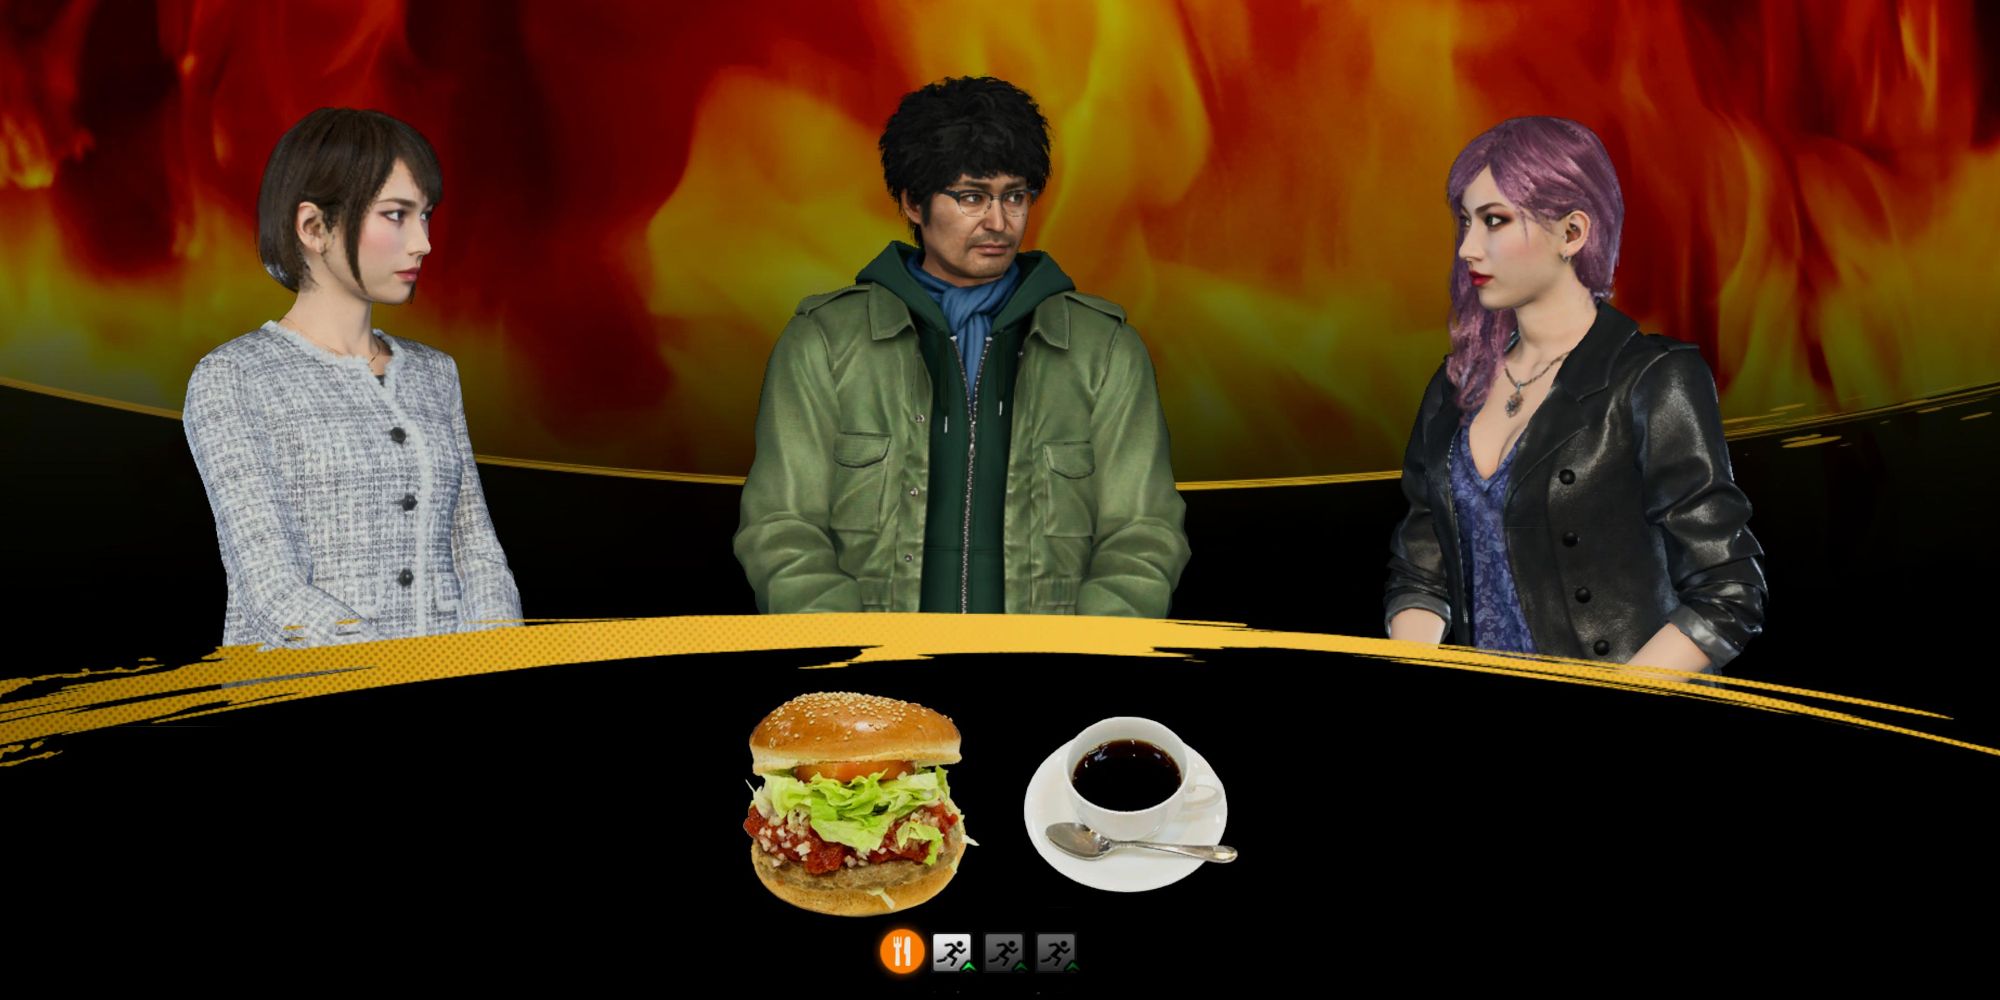  Like A Dragon Infinite Wealth, Saeko, Seonhee, and Nanba having a conversaton while eating a burger